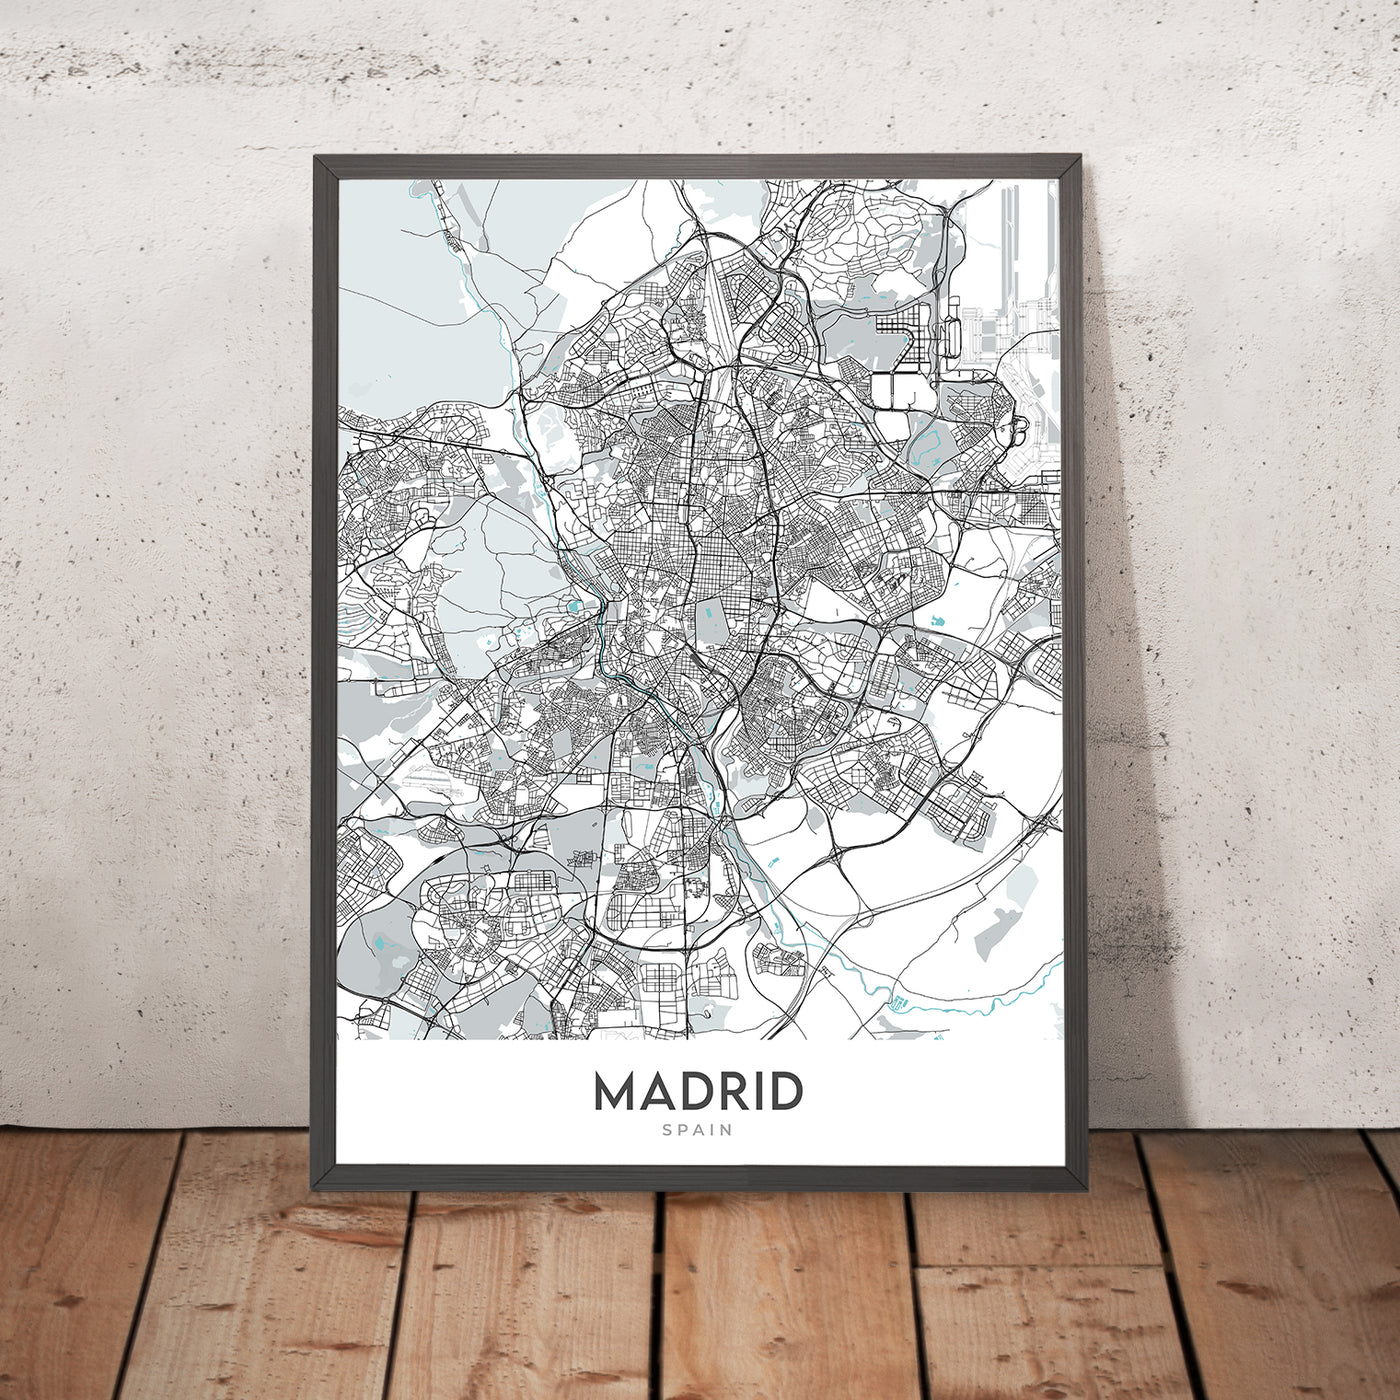 Moderner Stadtplan von Madrid, Spanien: Königspalast, Prado, Retiro, Gran Vía, Casa de Campo